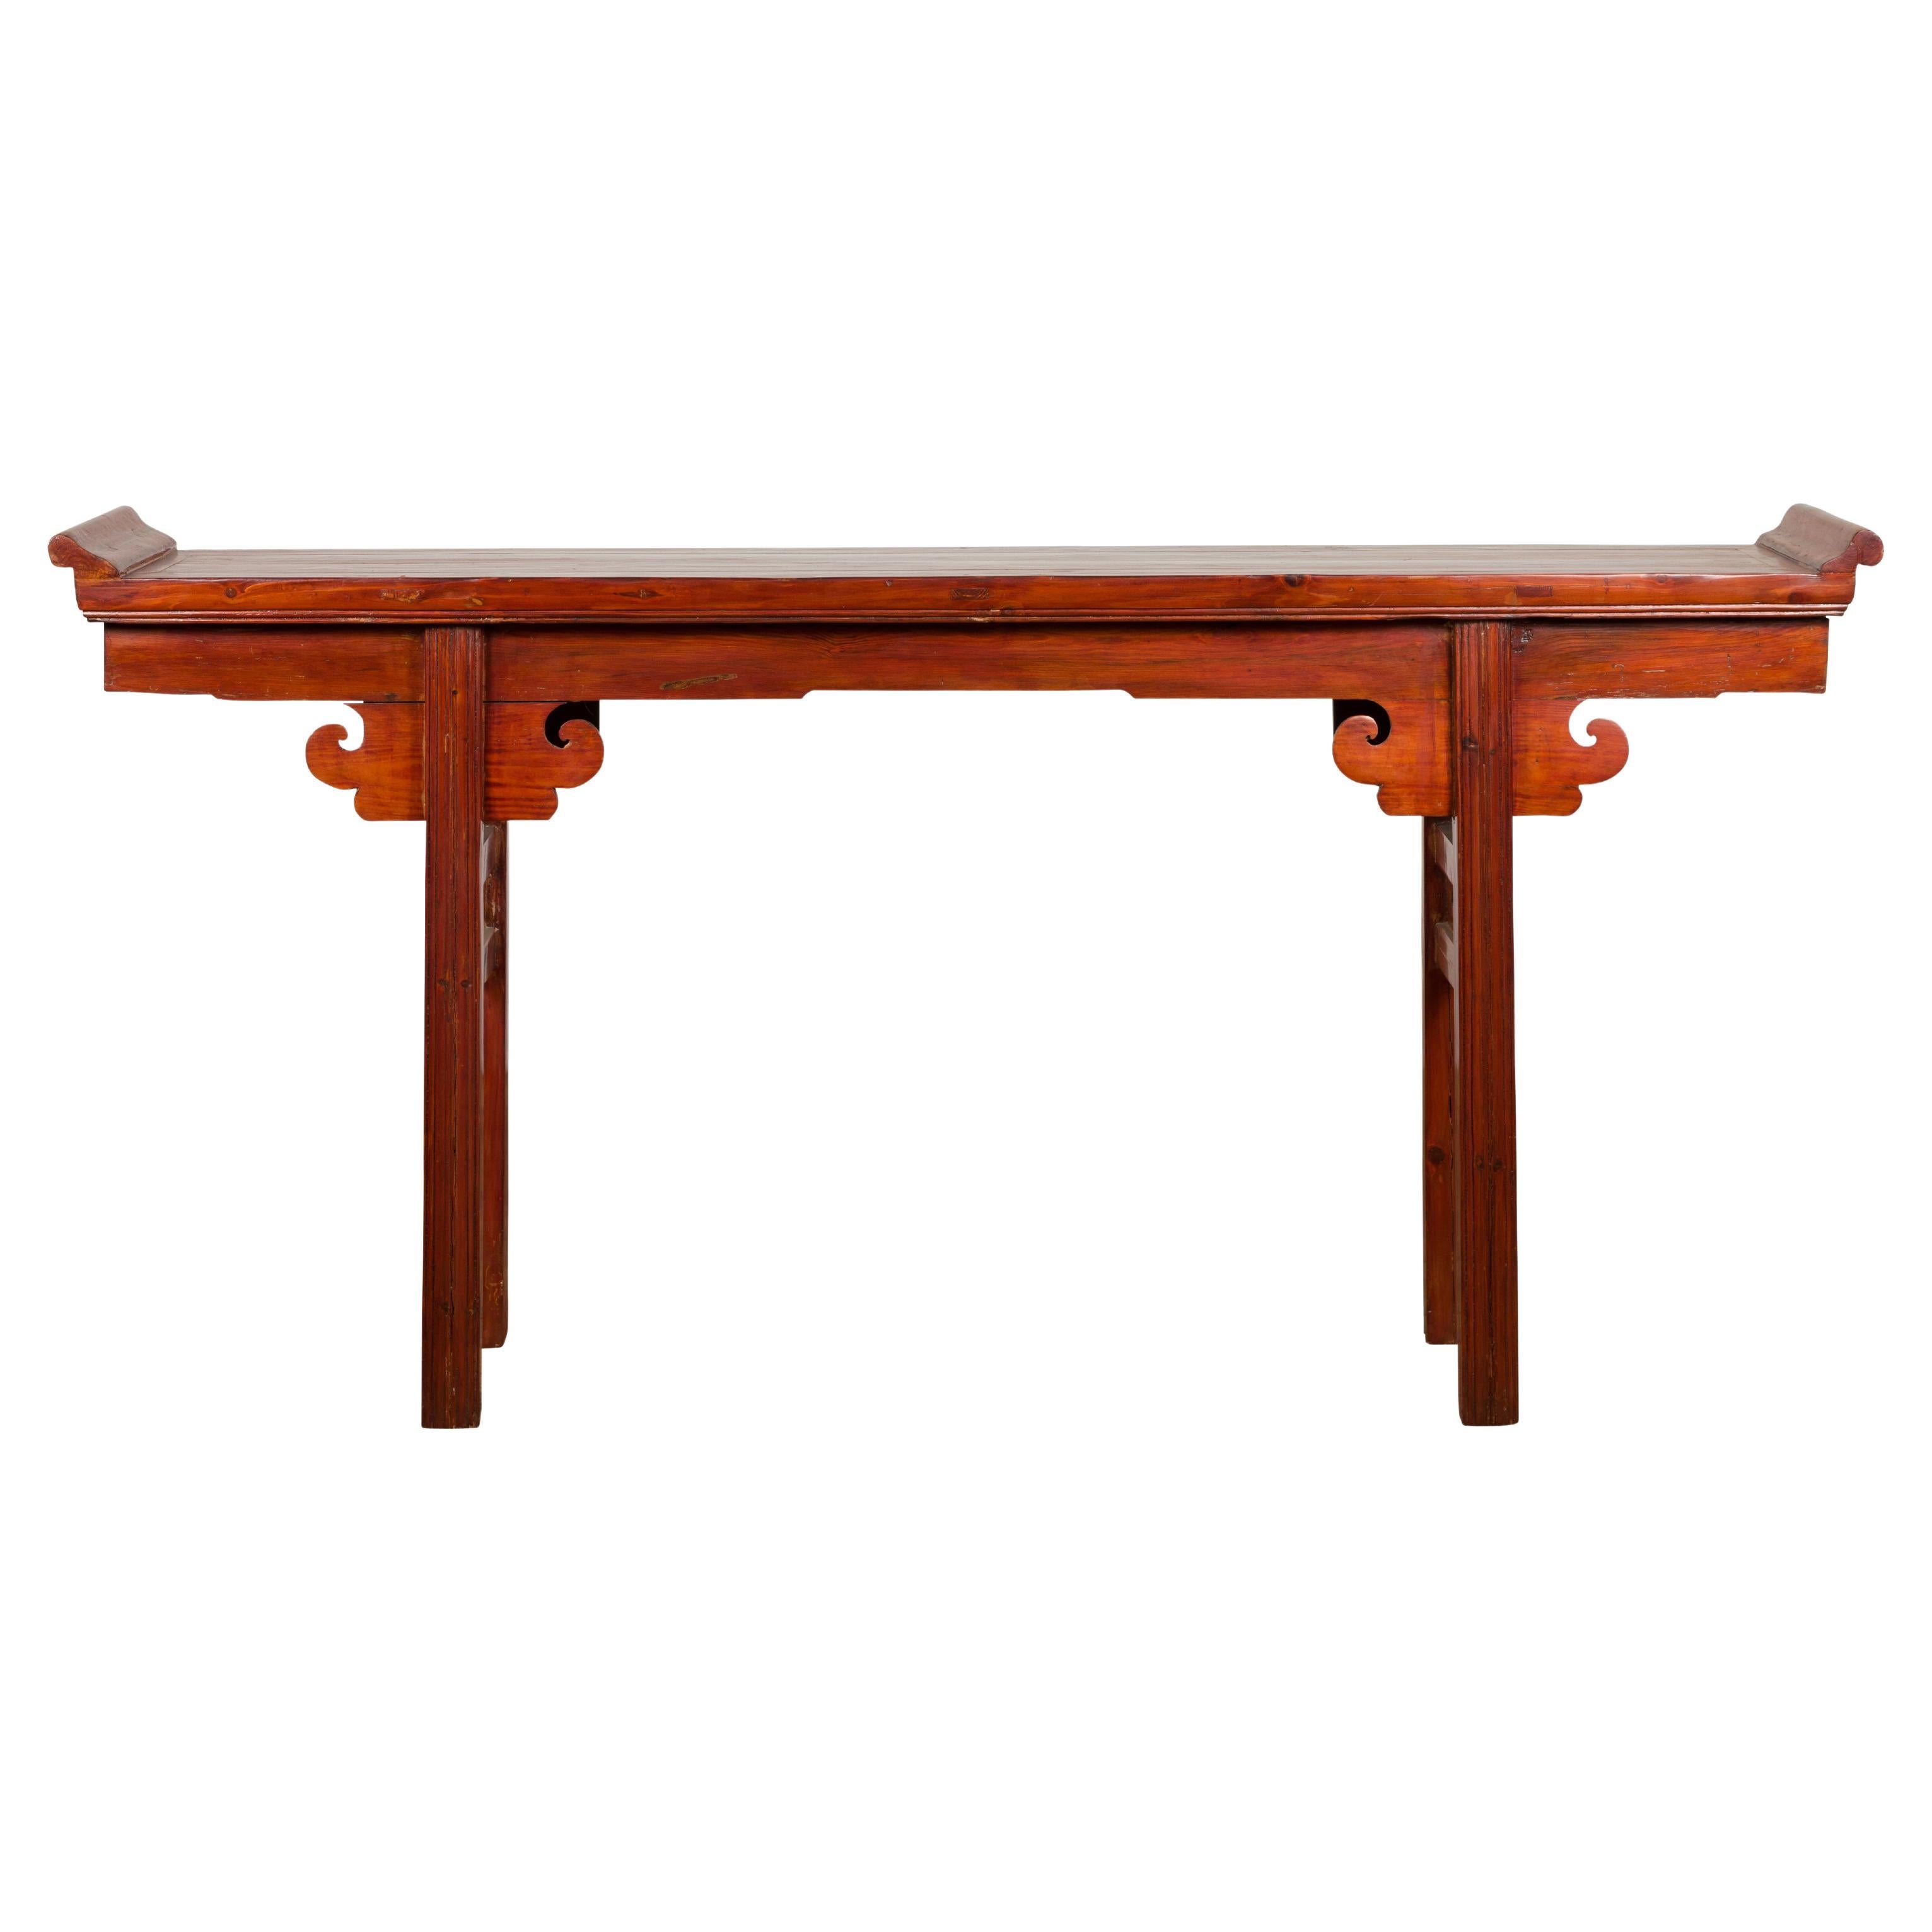 Table console d'autel de la dynastie Qing avec tablier en bois à volutes